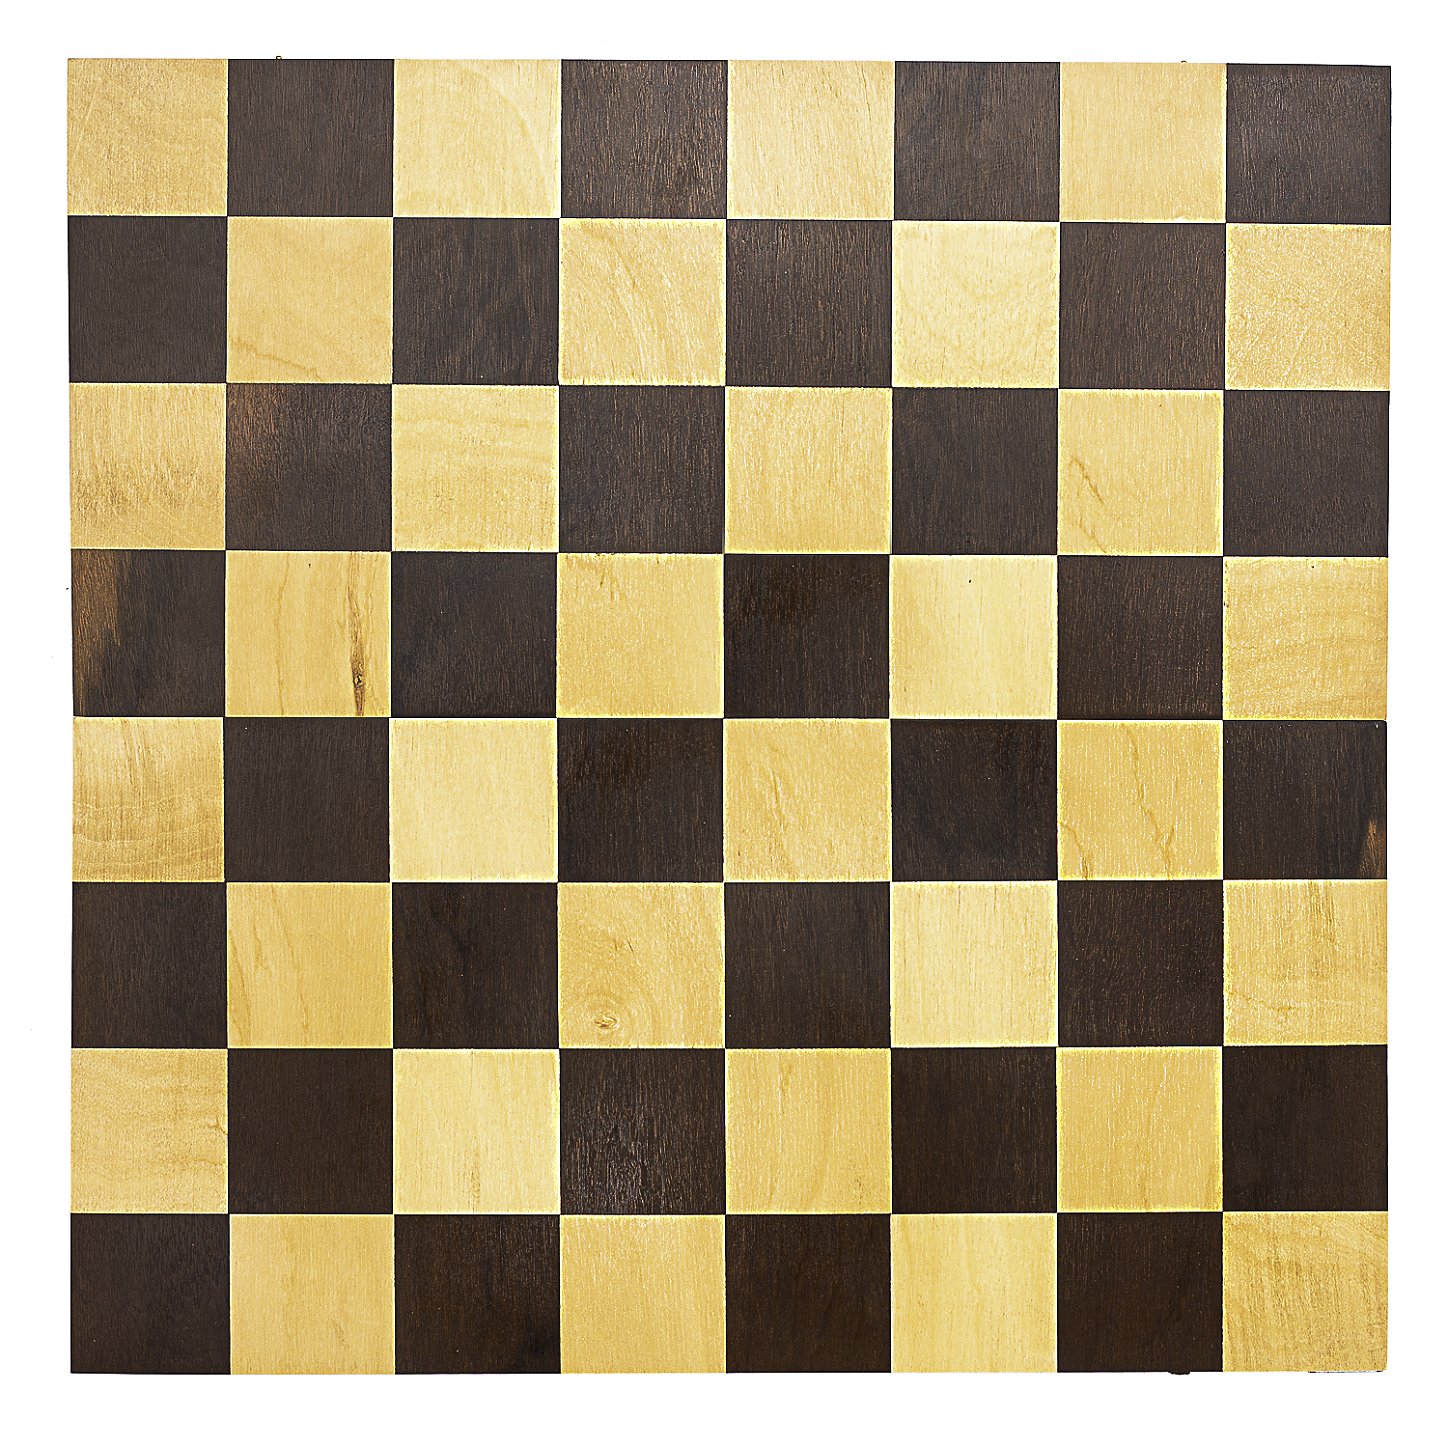 Jogo xadrez tabuleiro dobravel marchetado madeira macica casas5x5 cm e  pecas rei 10 cm